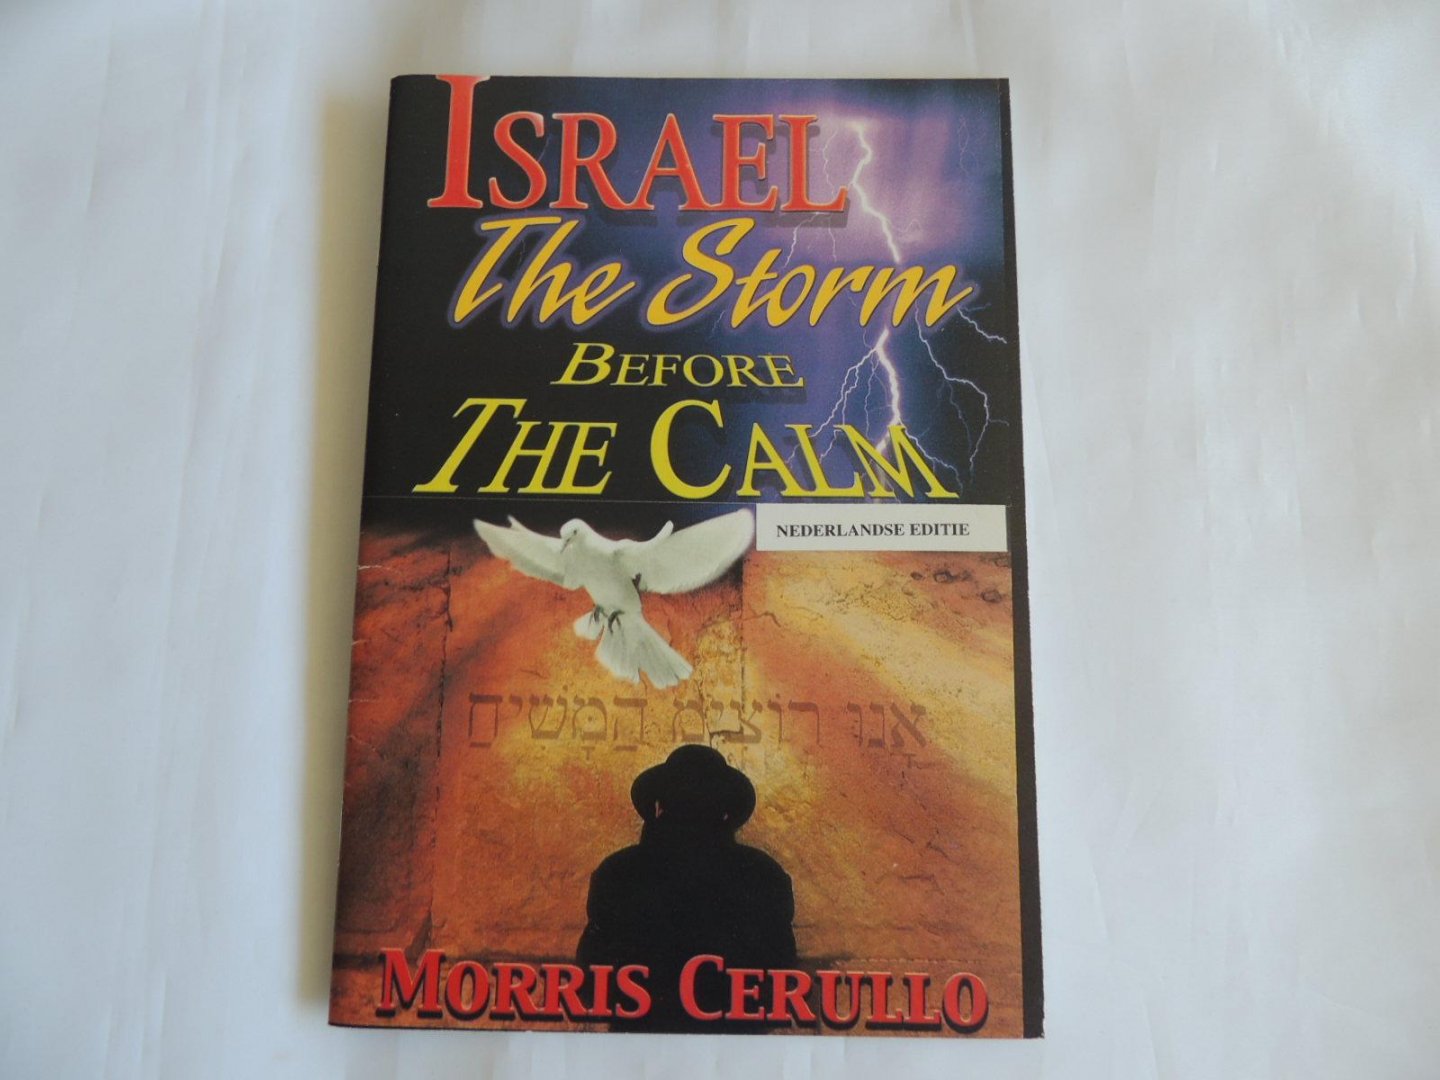 Cerullo morris - Israel : the storm before the calm de storm voor de stilte - the ten lost tribes de tien verloren stammen - Palestine. palestina